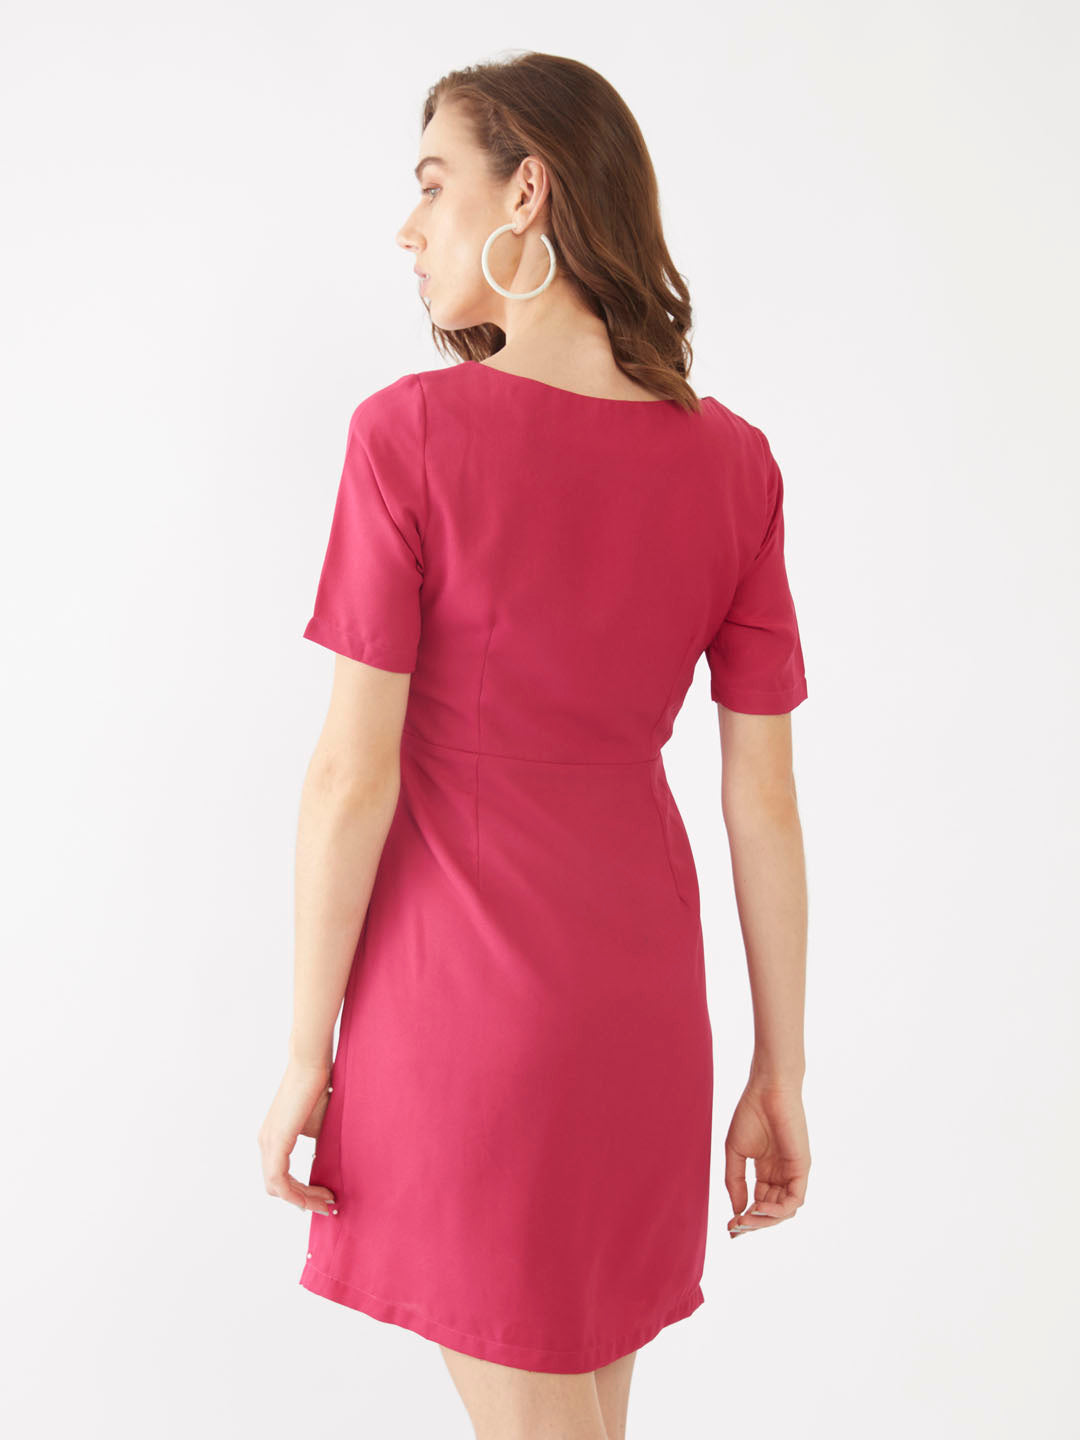 Pink Embellished Short Dress For Women